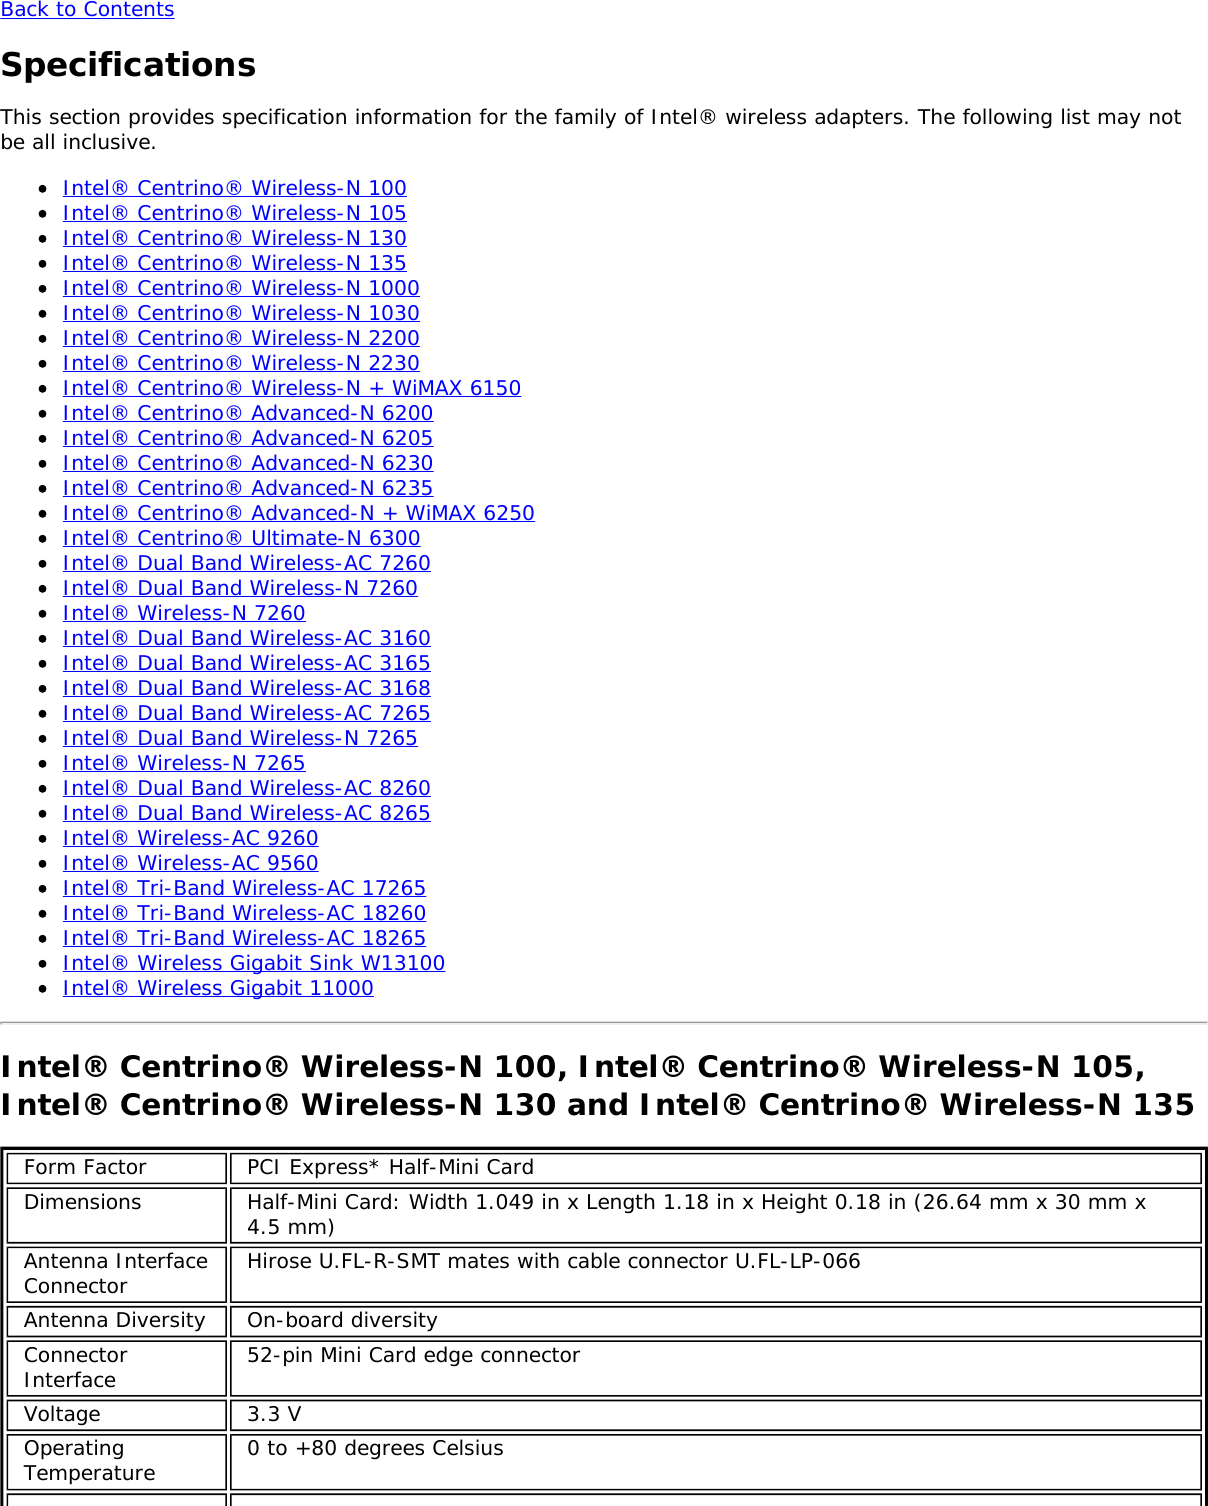 Page 35 of Hewlett Packard Enterprise EL3009260 Wifi/BT Module User Manual Intel     WiFi Adapter Information Guide